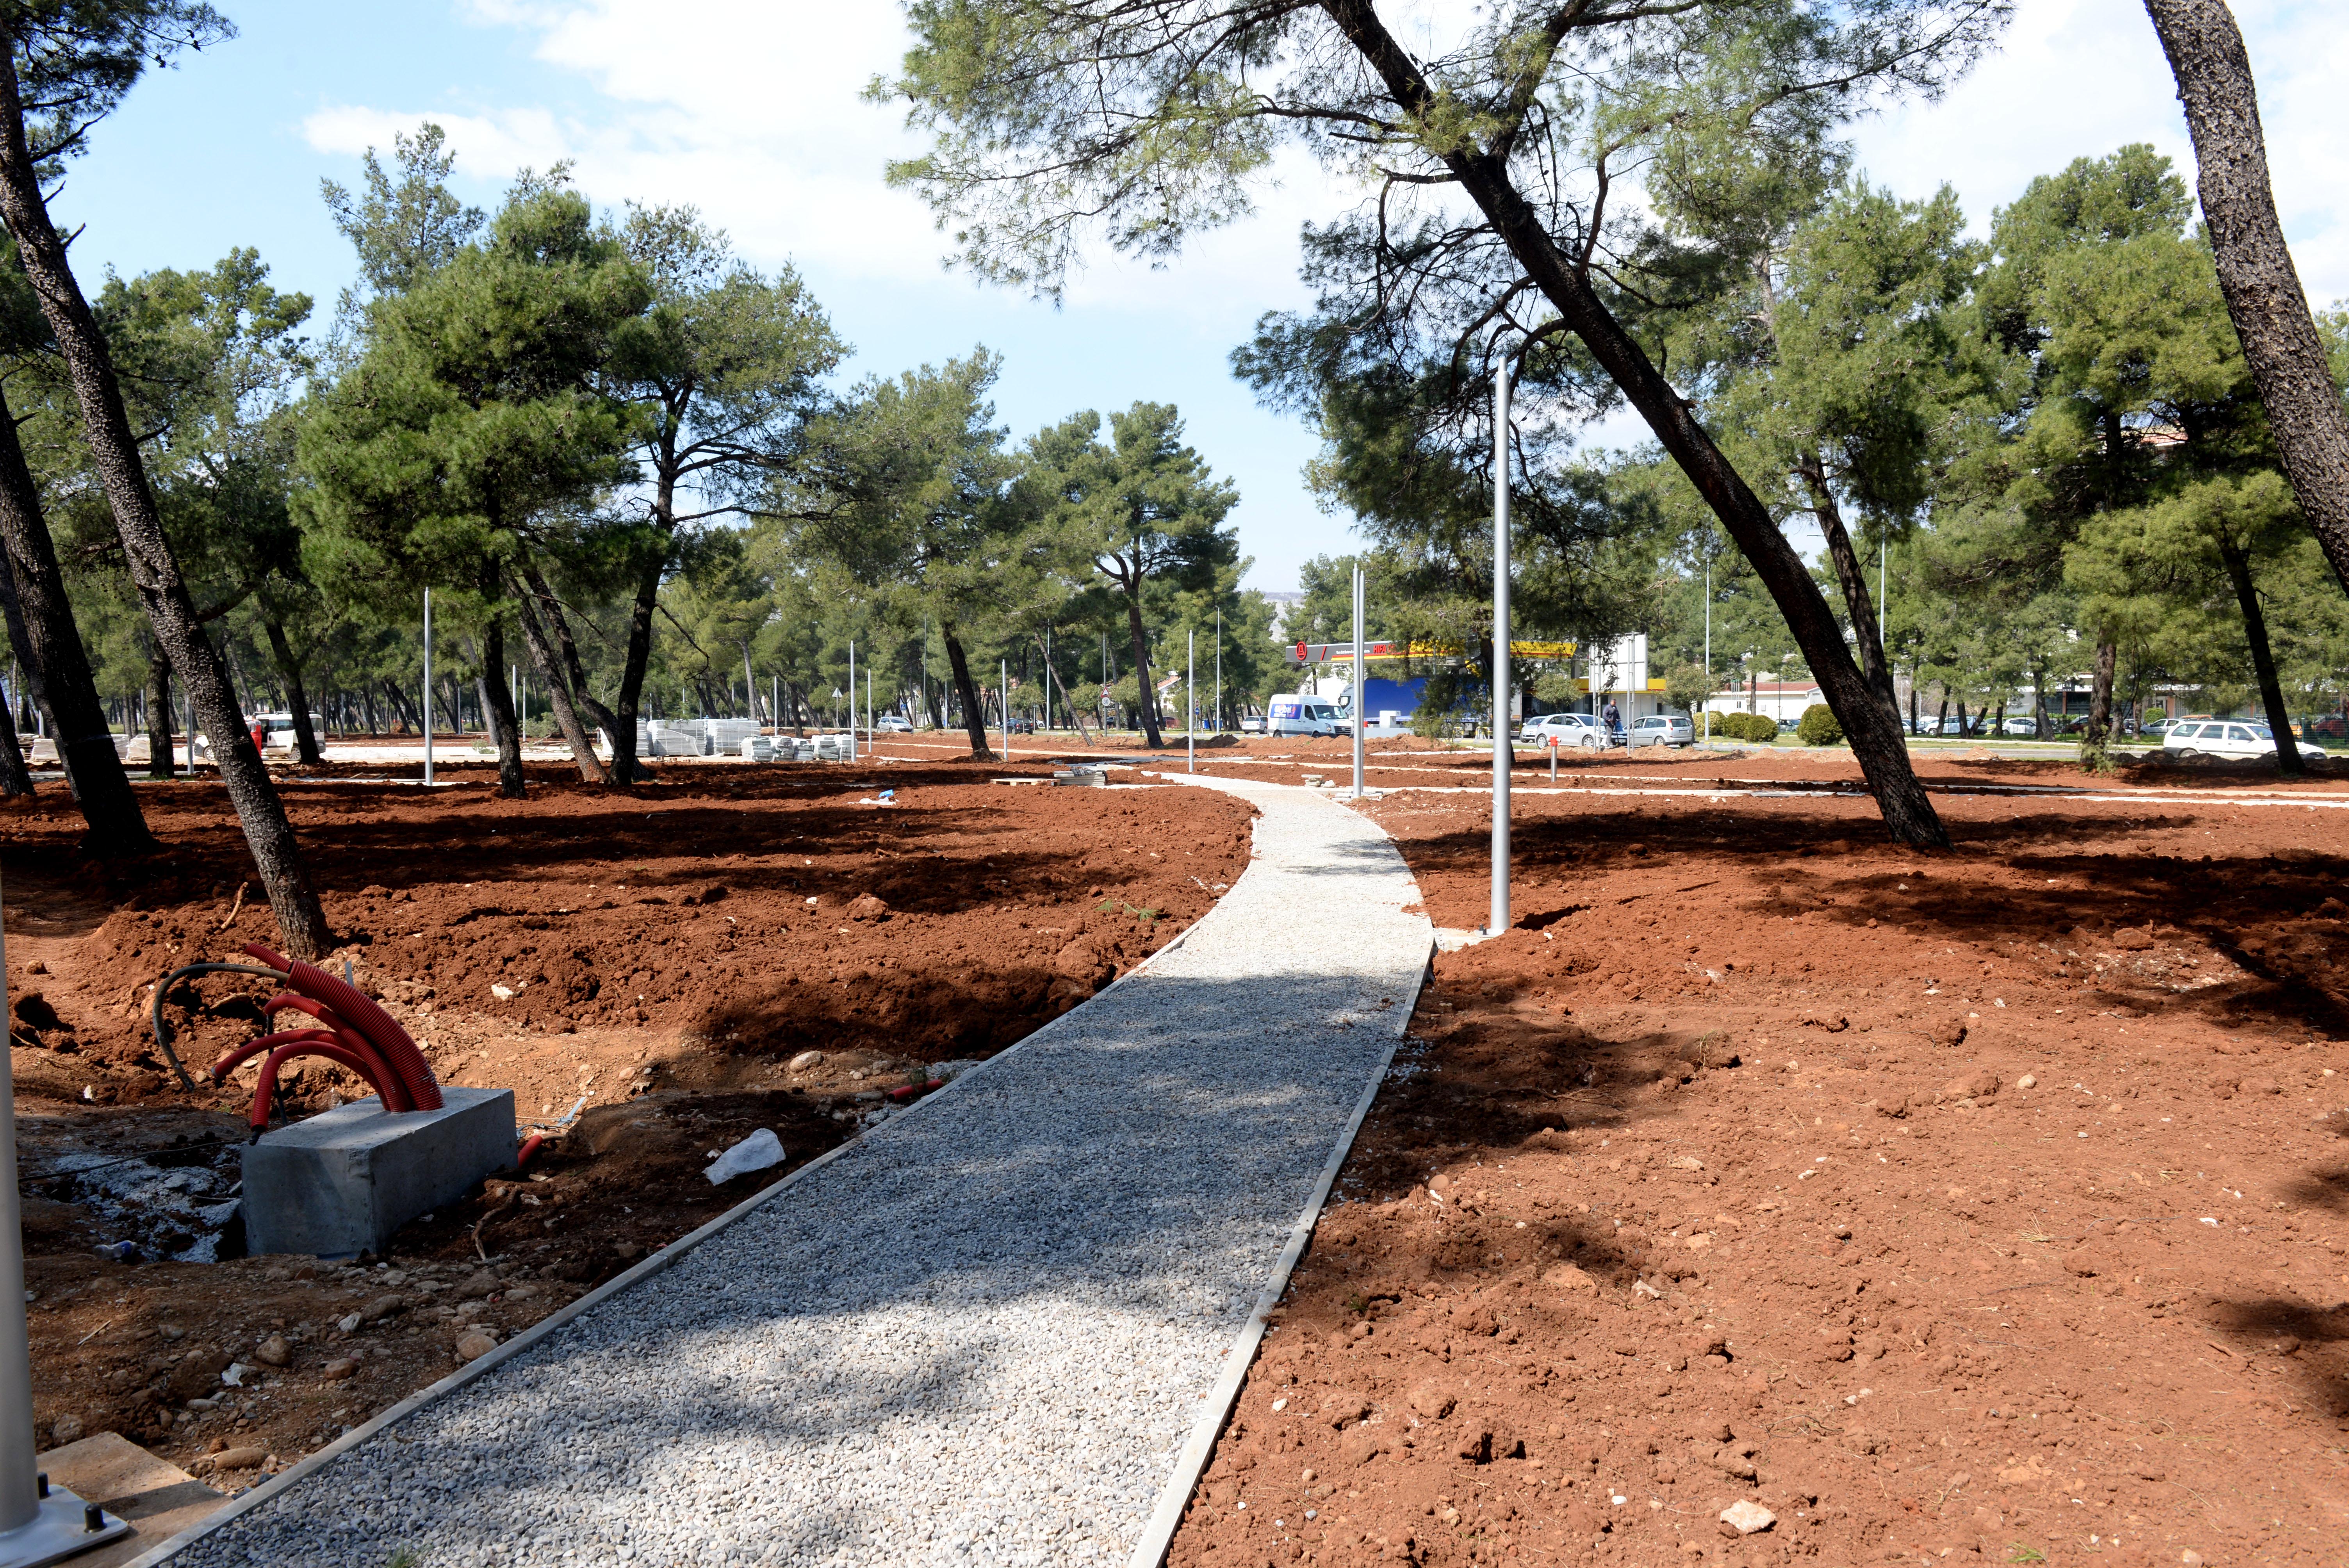 Uređenje park-šume Tološi odvija se prema planu: Podgorica će uskoro dobiti jednu od najsavremenijih i najljepših sportsko-rekreativnih zona